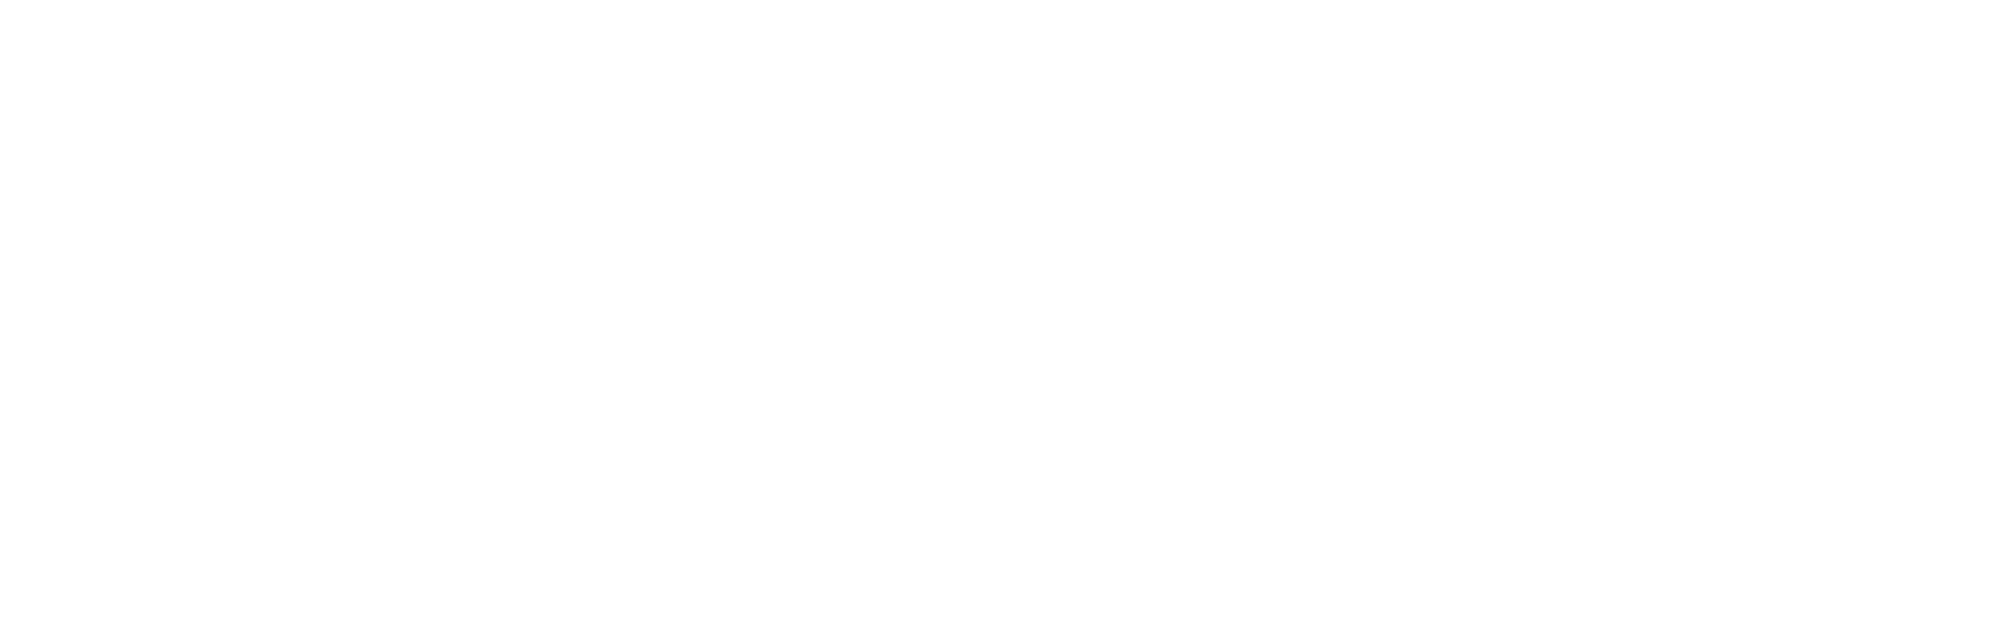 W_FERRER-1